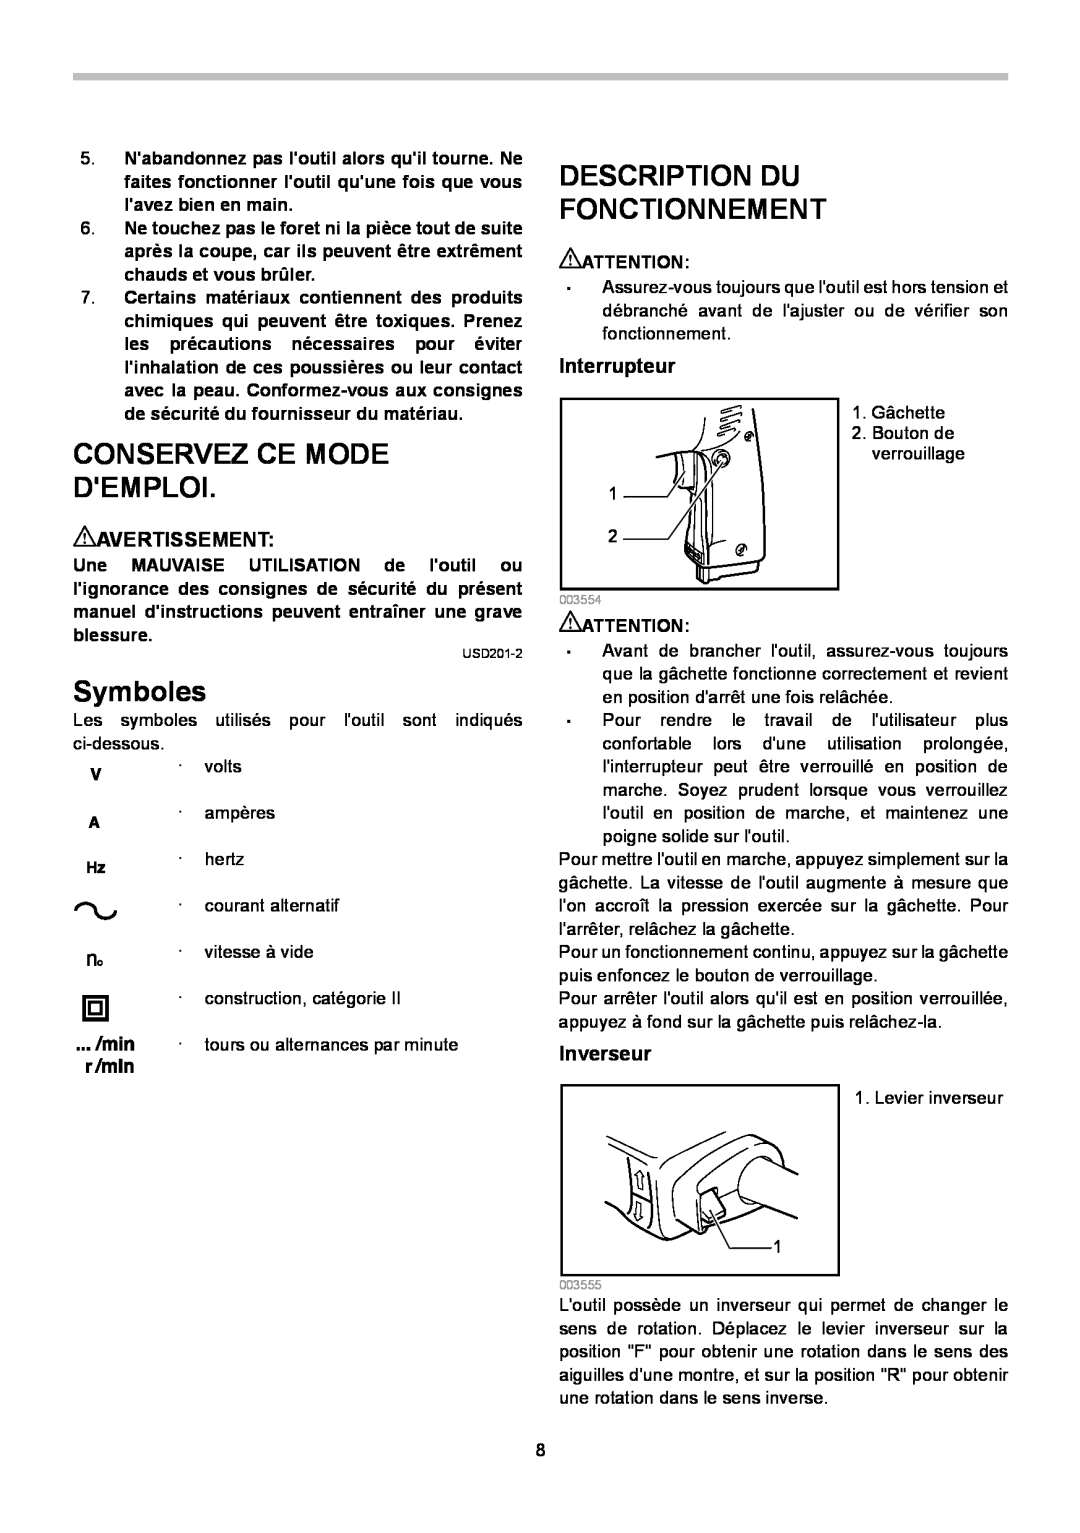 Makita 6510LVR Description Du Fonctionnement, Symboles, Conservez Ce Mode Demploi, Interrupteur, Avertissement, Inverseur 